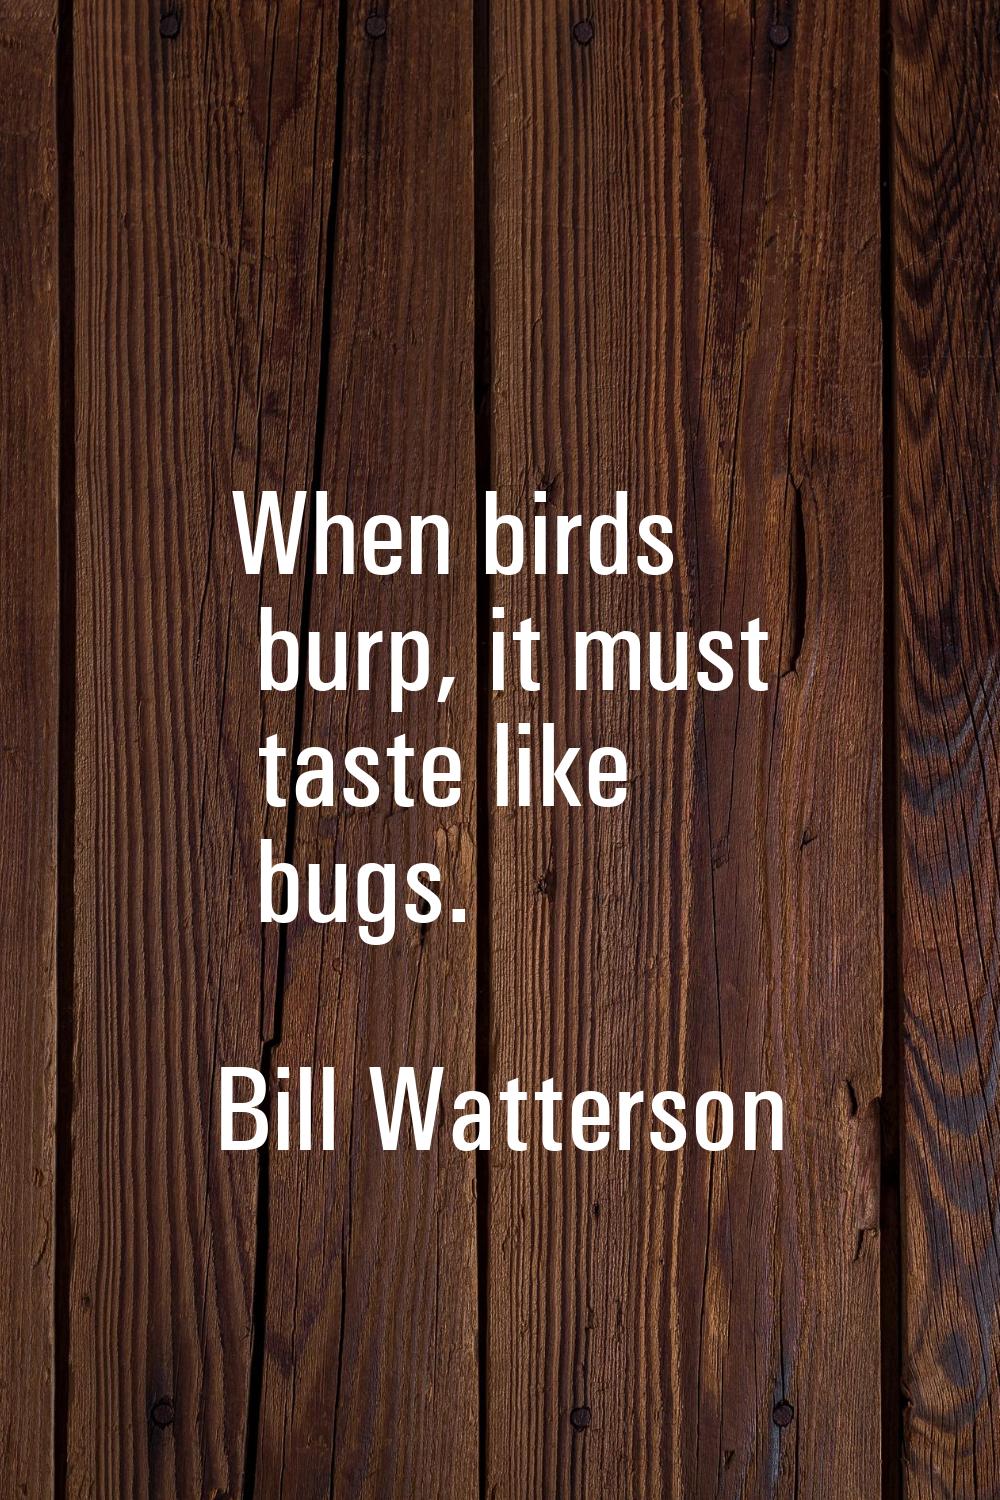 When birds burp, it must taste like bugs.